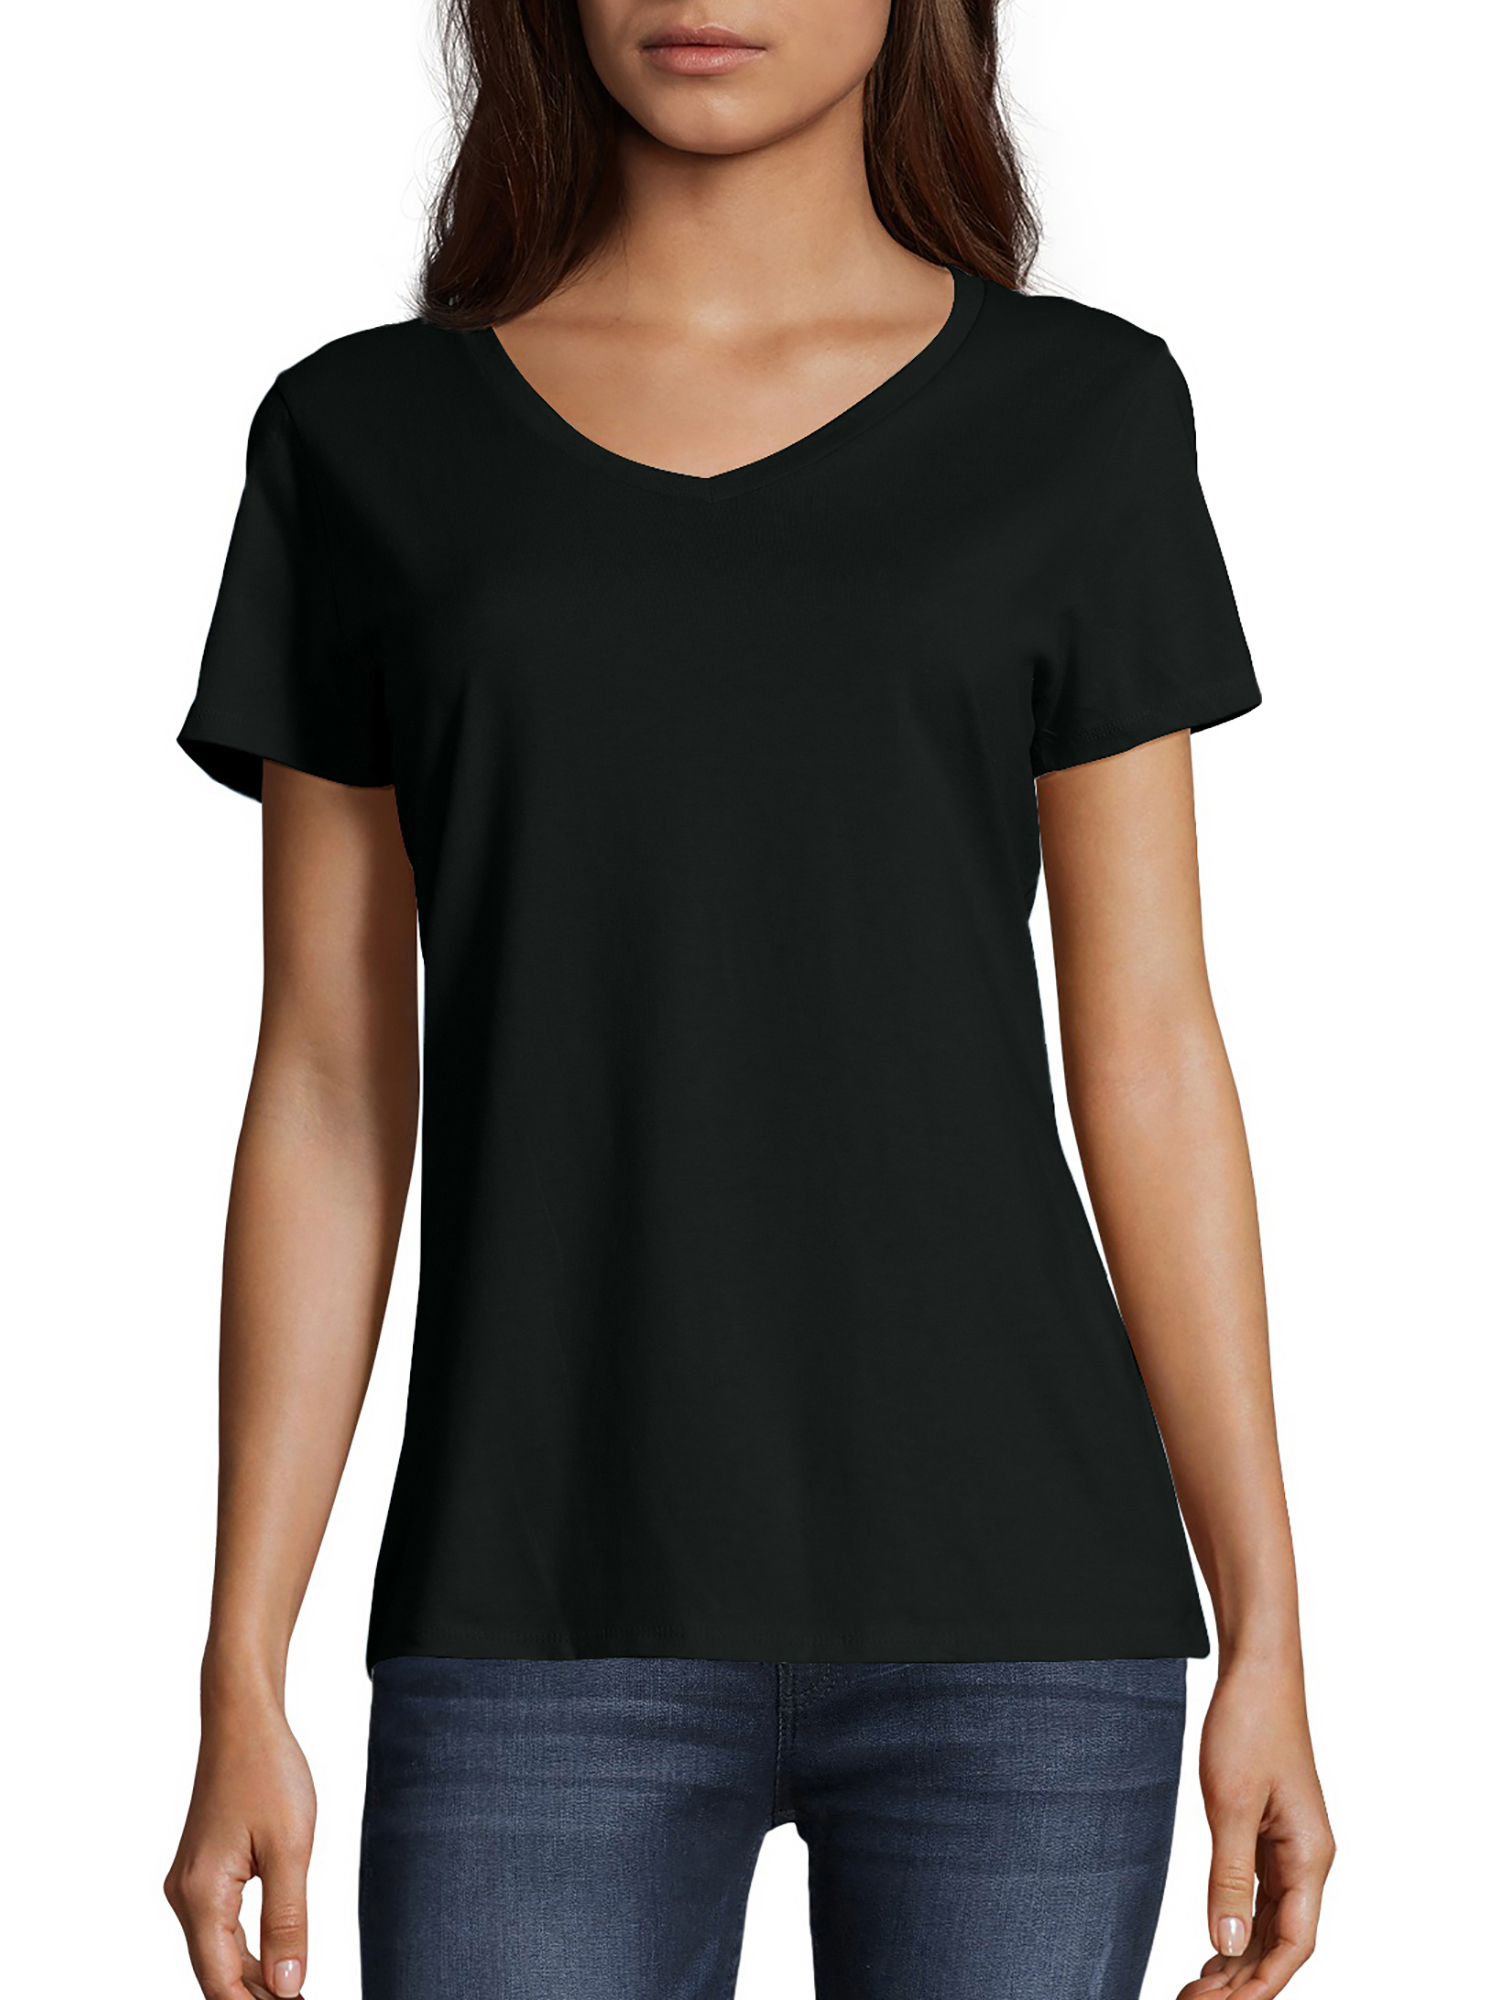 Hanes Women's Nano-T V-Neck T-Shirt - image 1 of 5